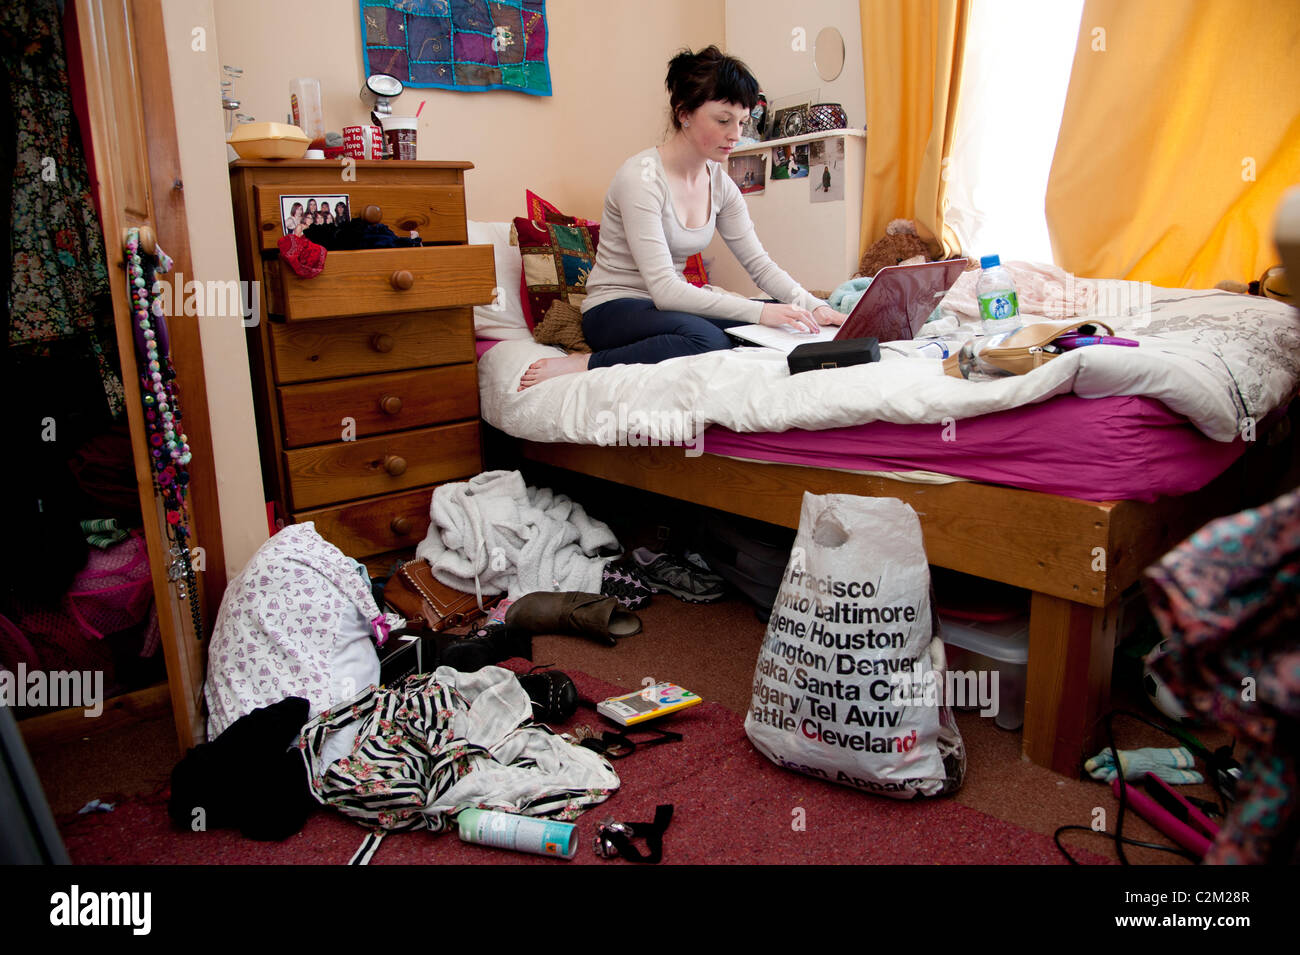 Una giovane donna REGNO UNITO aberystwyth studente universitario lavorando sul suo computer portatile sul letto in una sudicia camera da letto Foto Stock